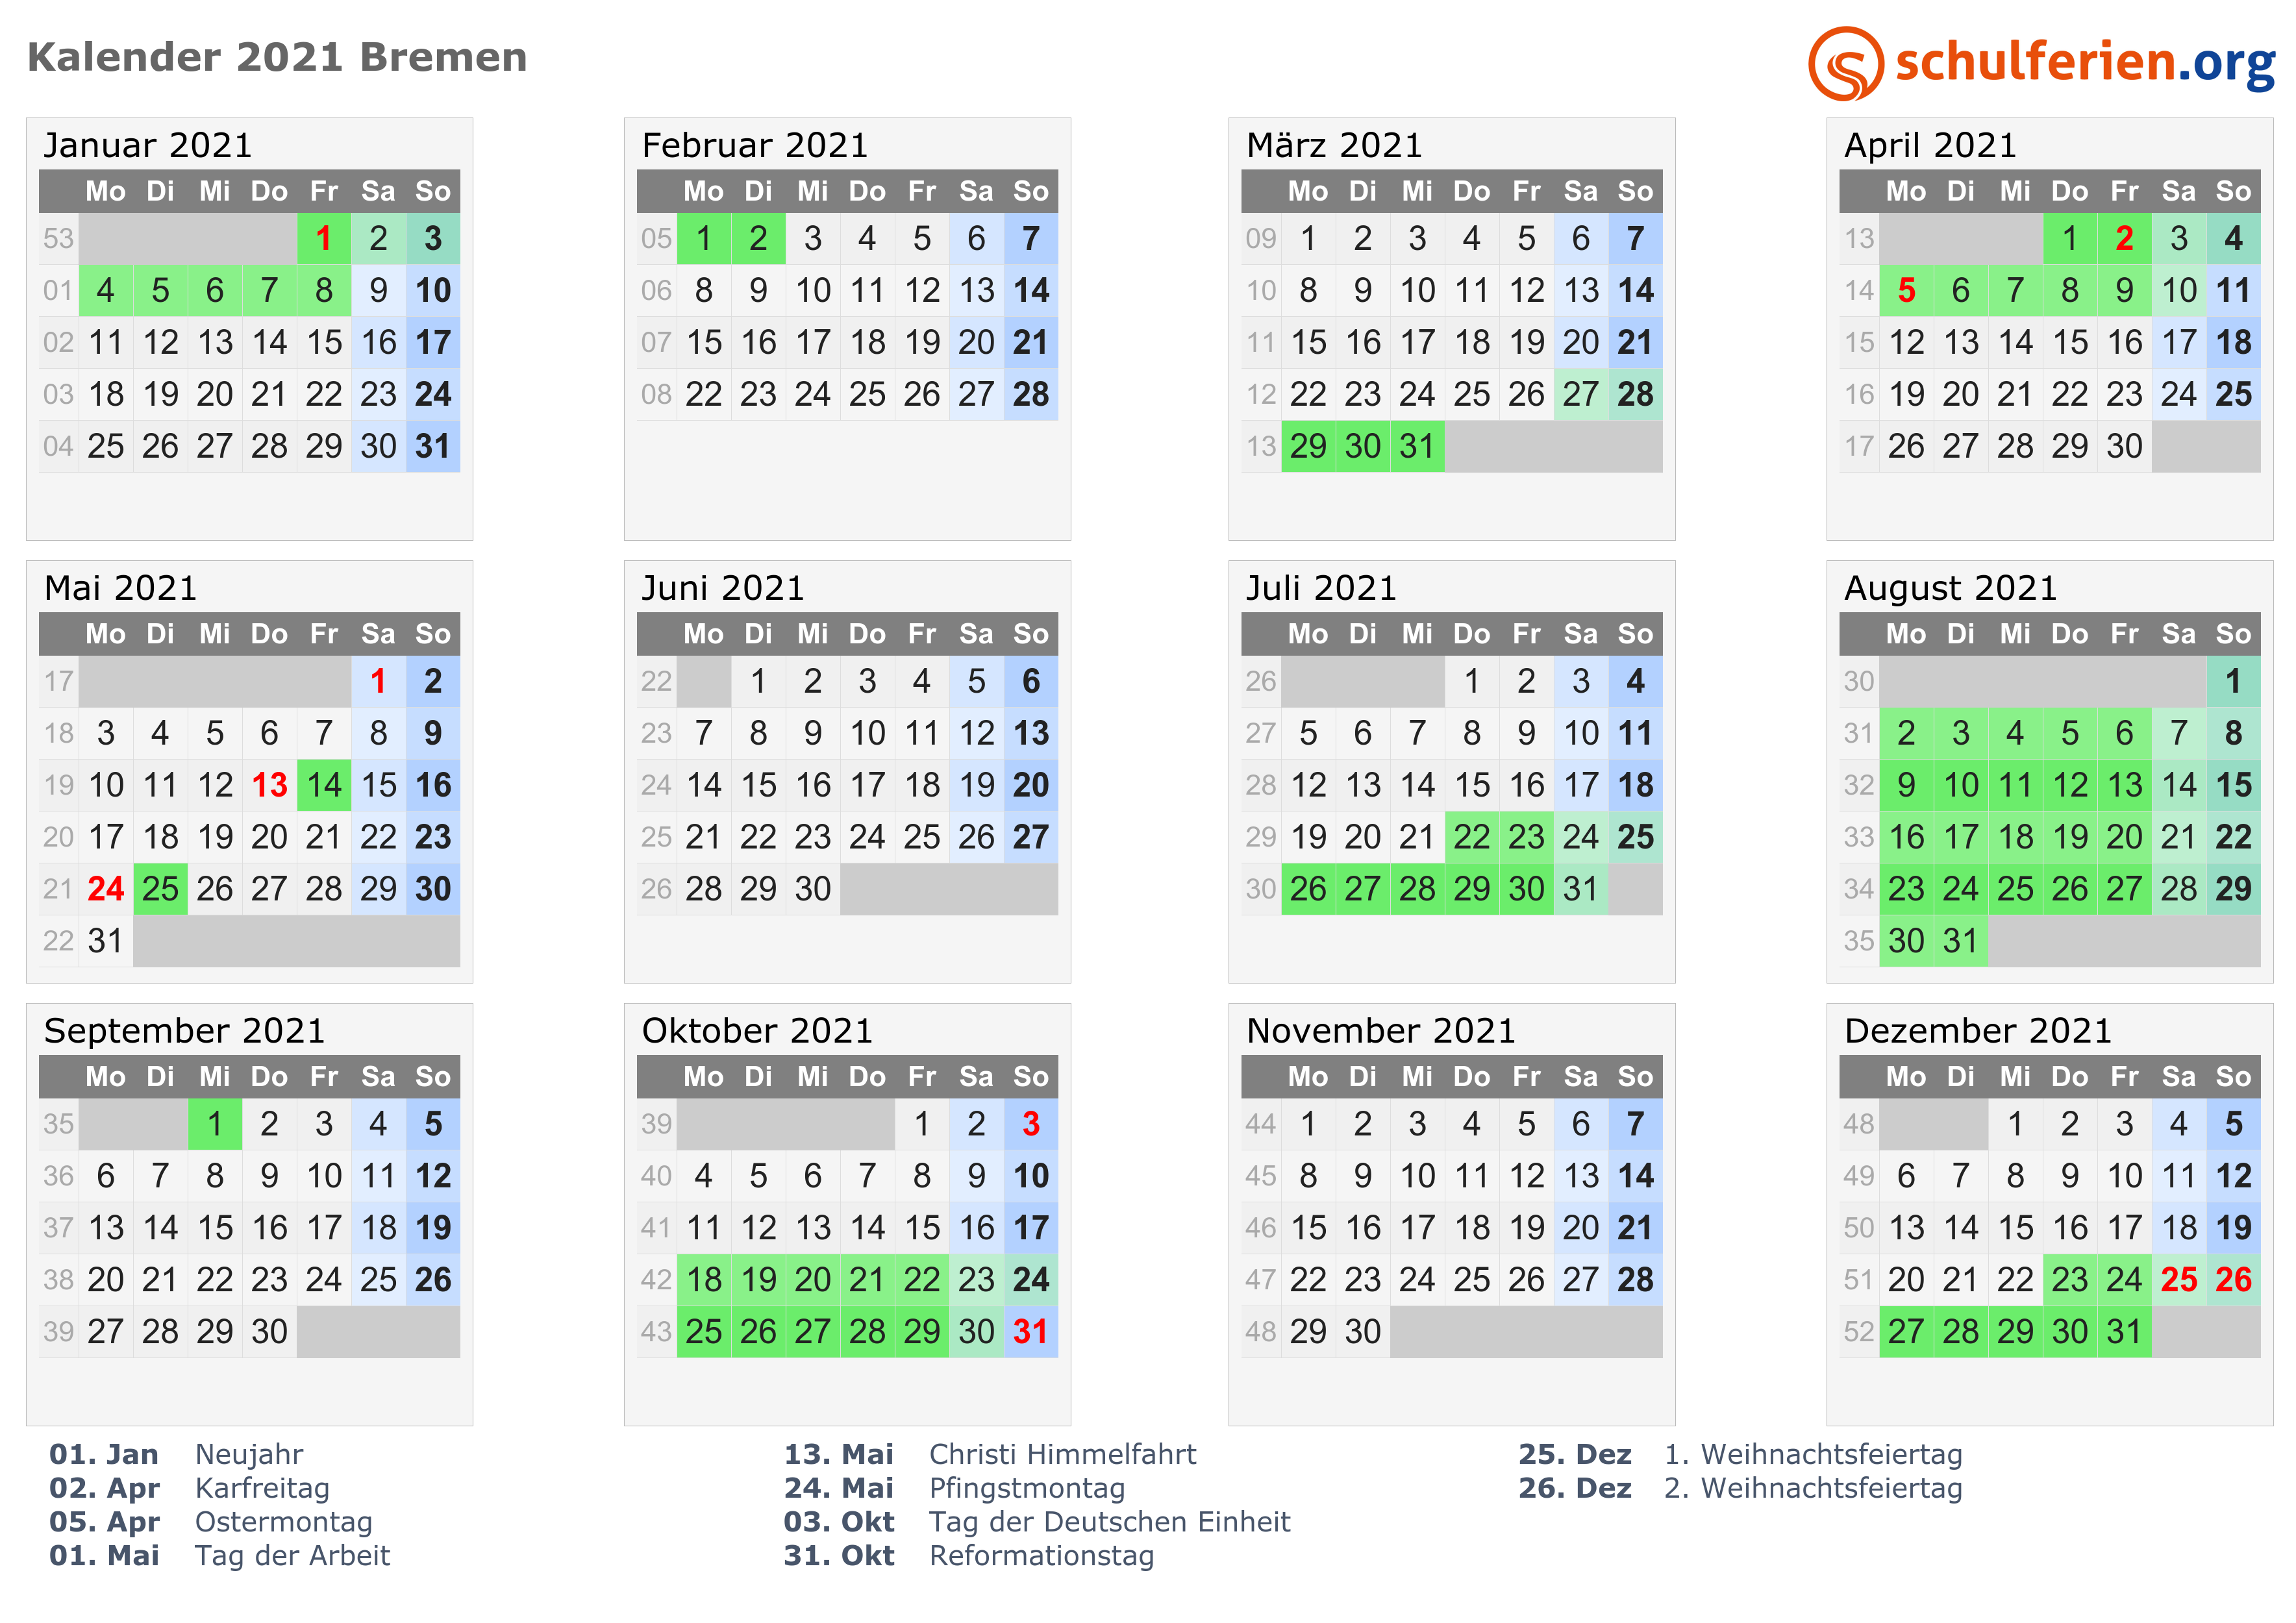 Kalender 2021 + Ferien Bremen, Feiertage